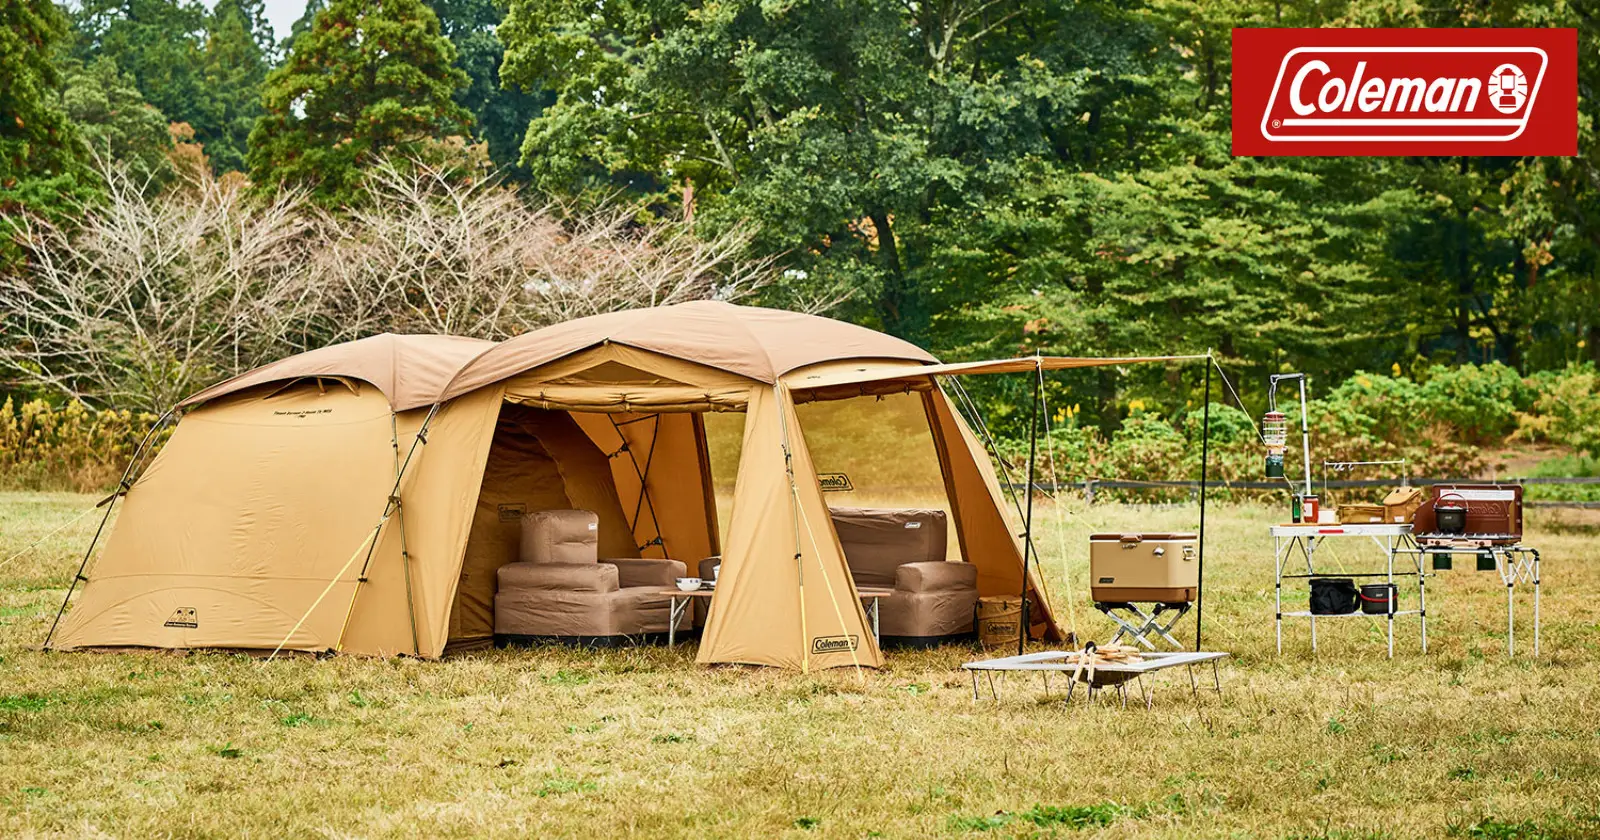 21,700円キャンプテント テント コールマン Coleman 2ルーム 速乾性